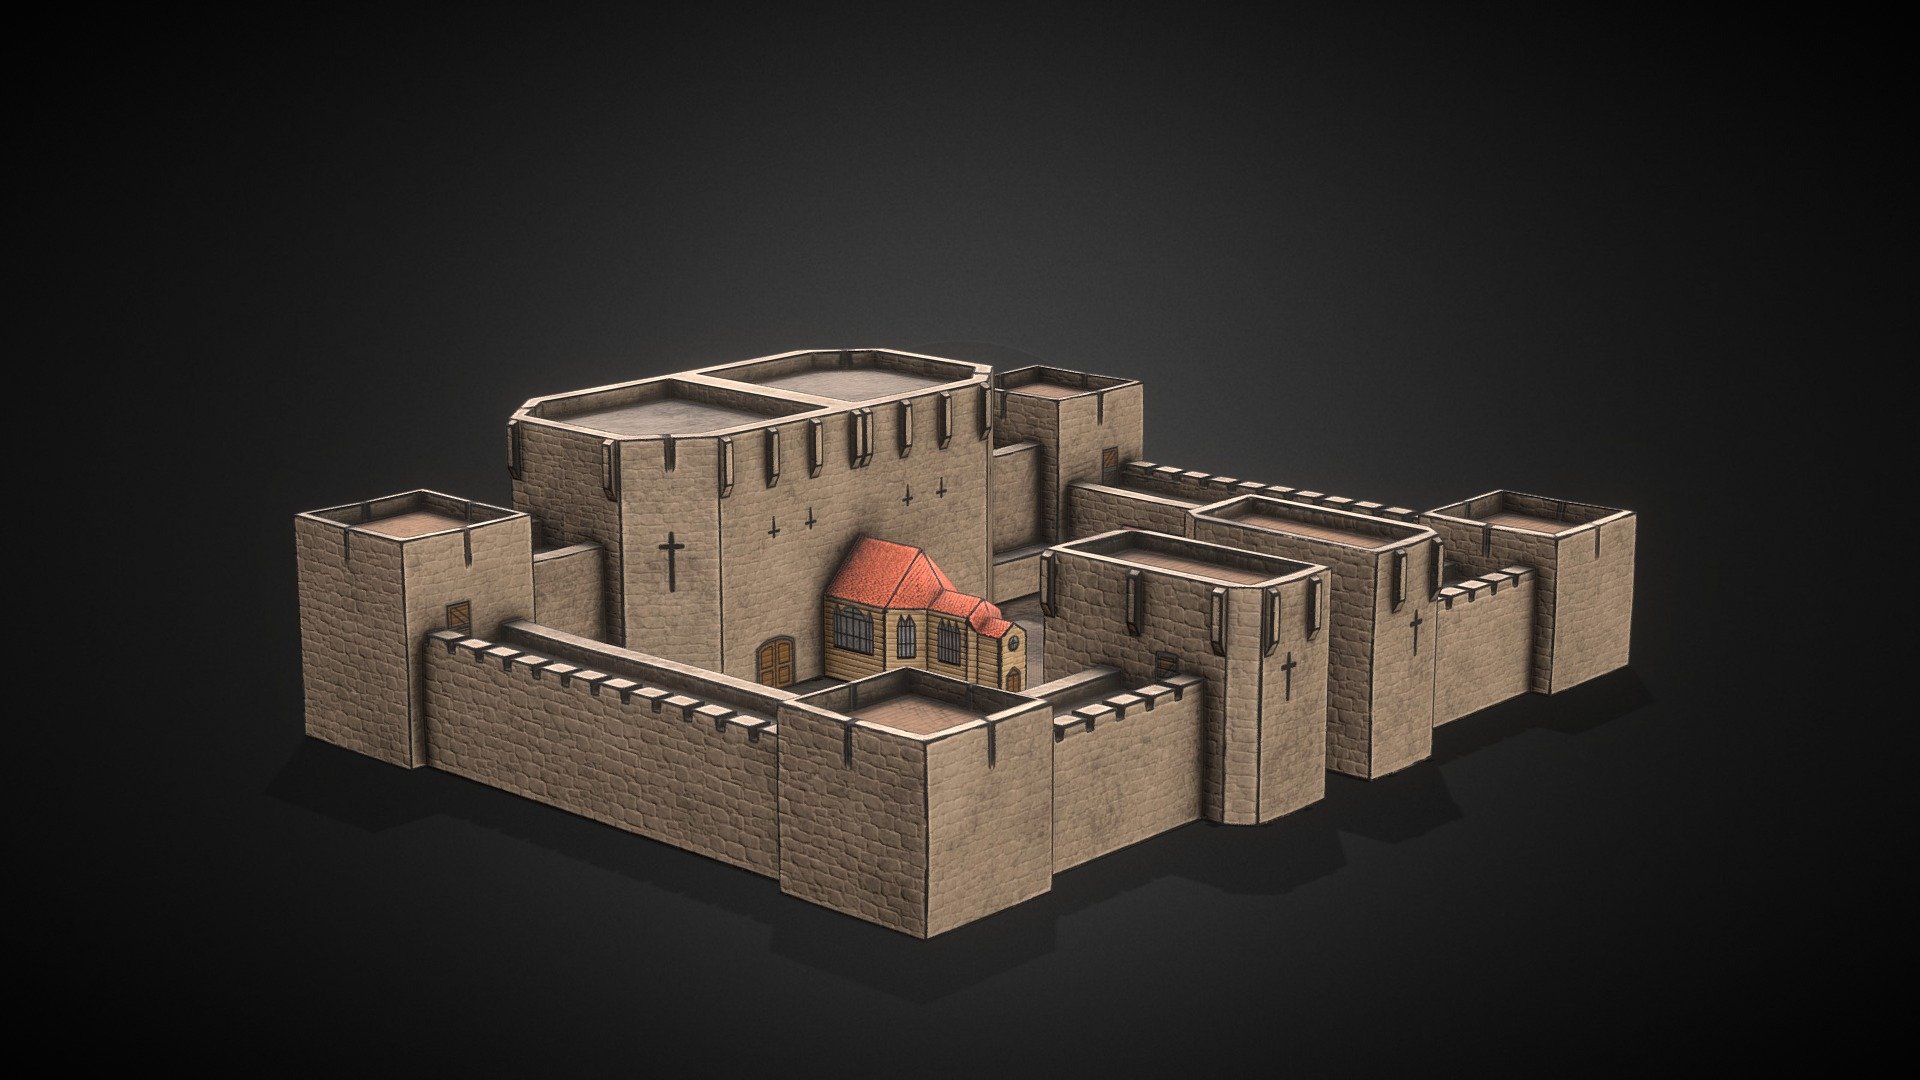 4k resolution, 3dsMax, Substance - Cartoon Castle - 3D model by Lee Alex Johansson (@lee.johansson) 3d model